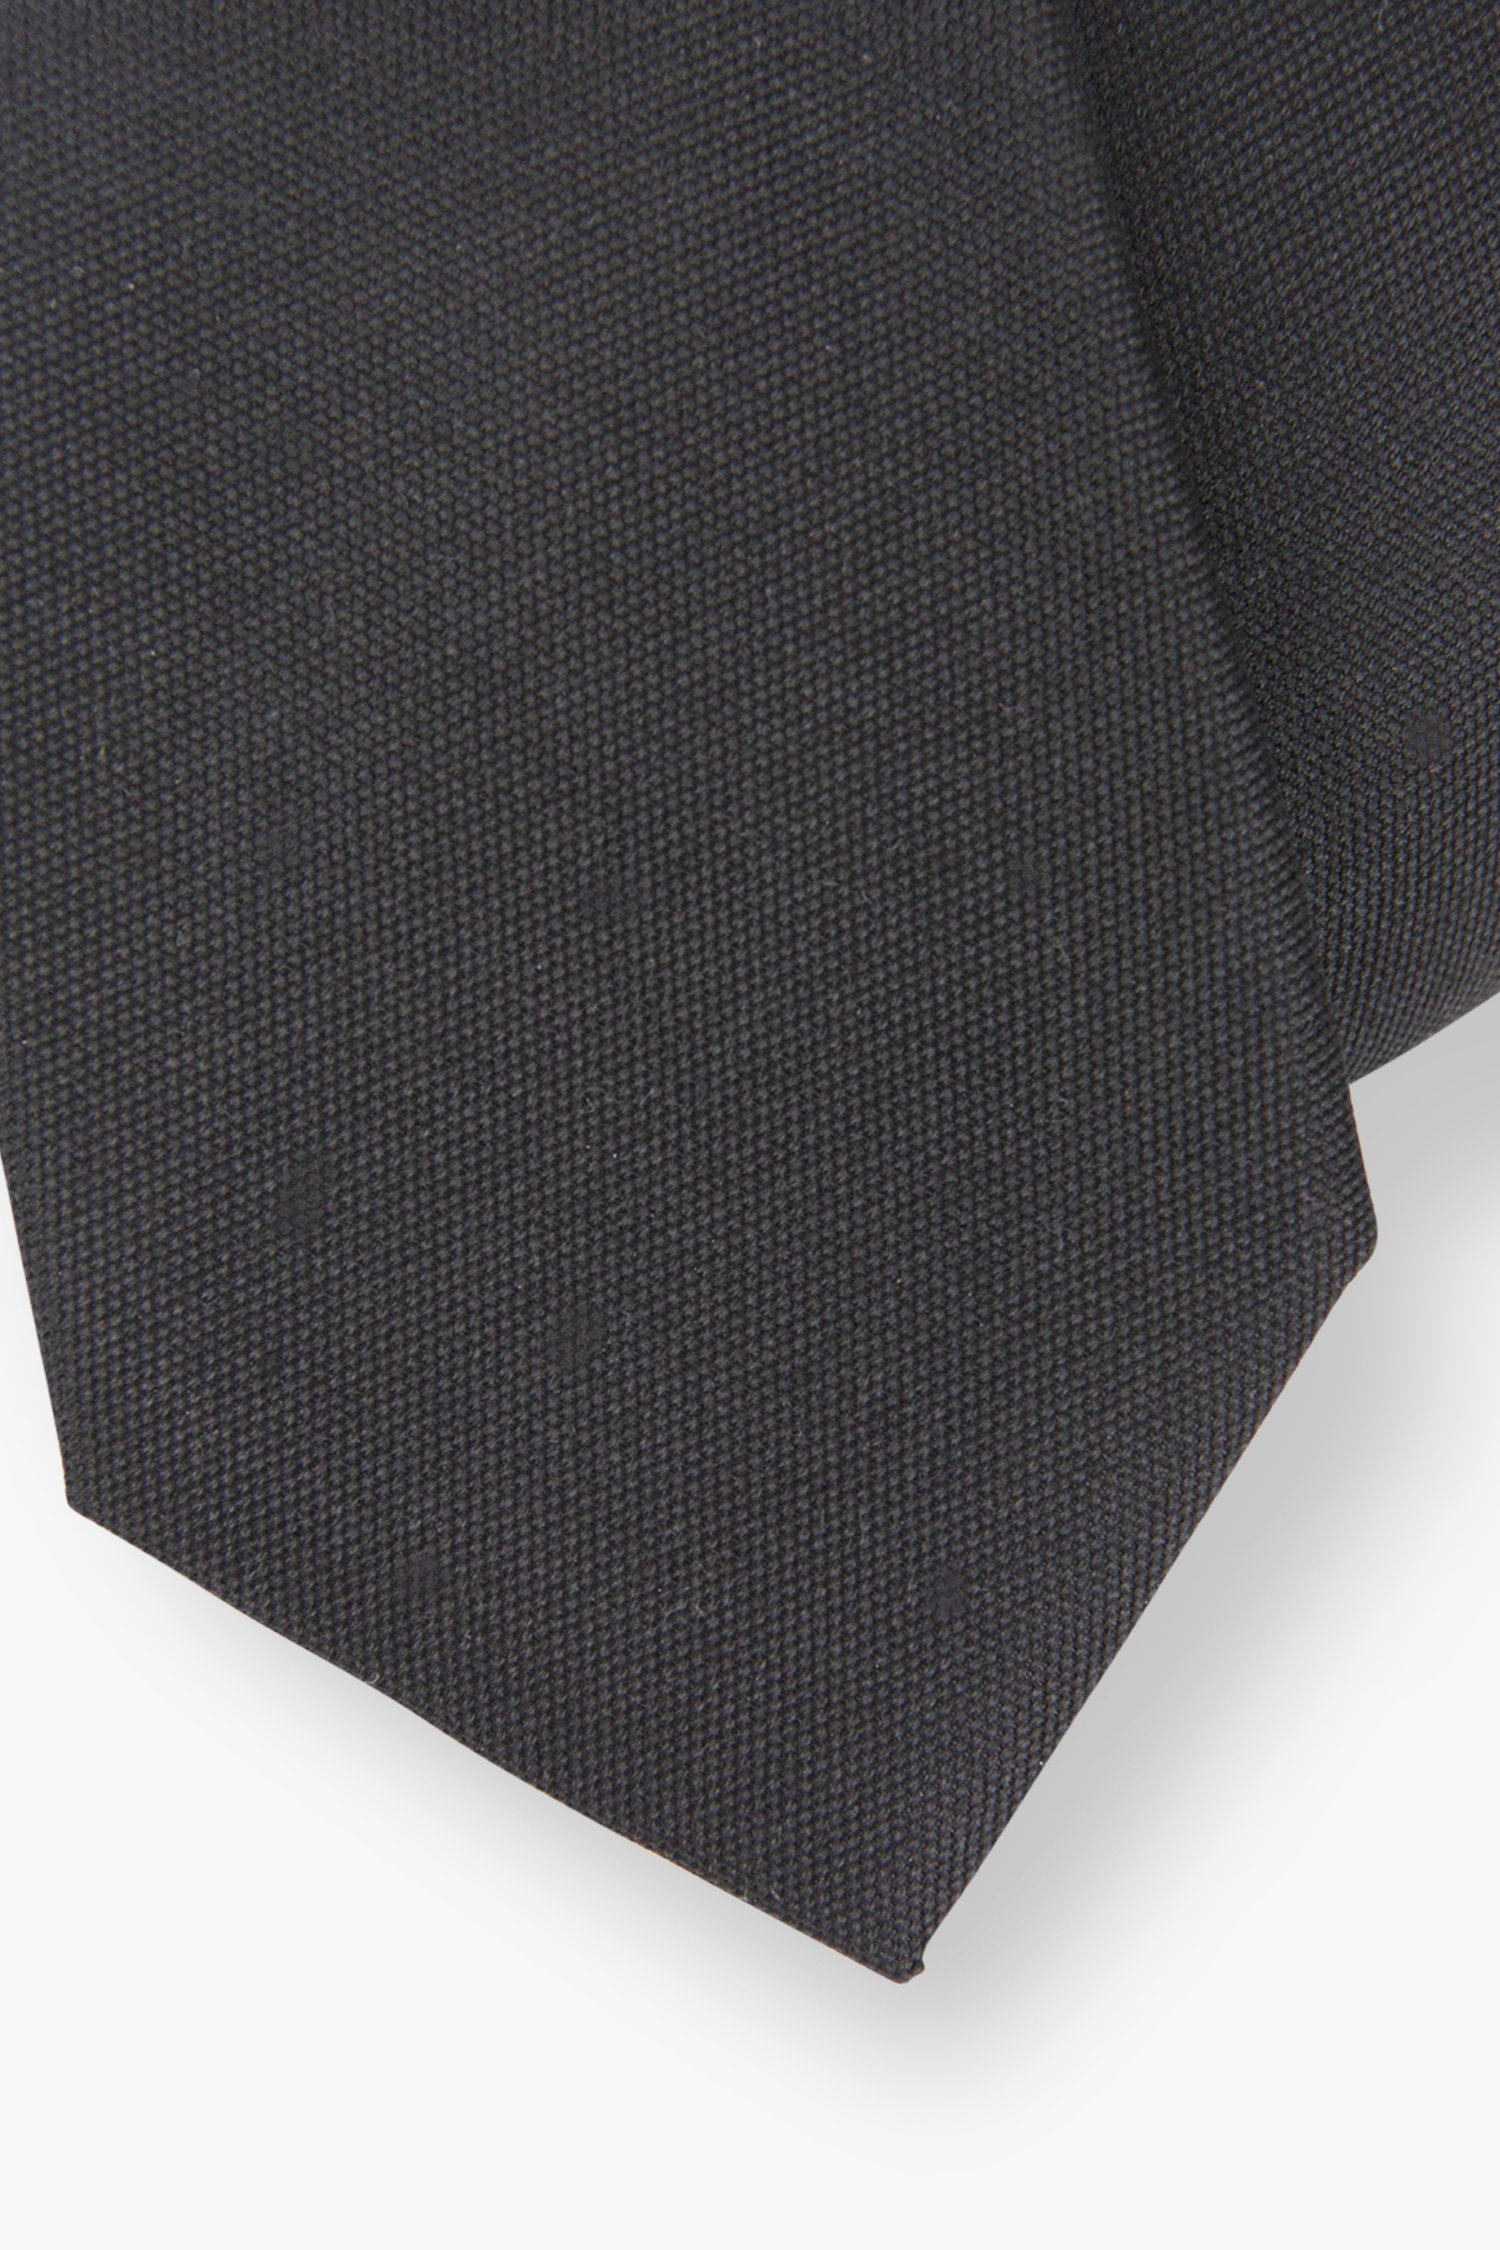 Cravate noire  de Michaelis pour Hommes